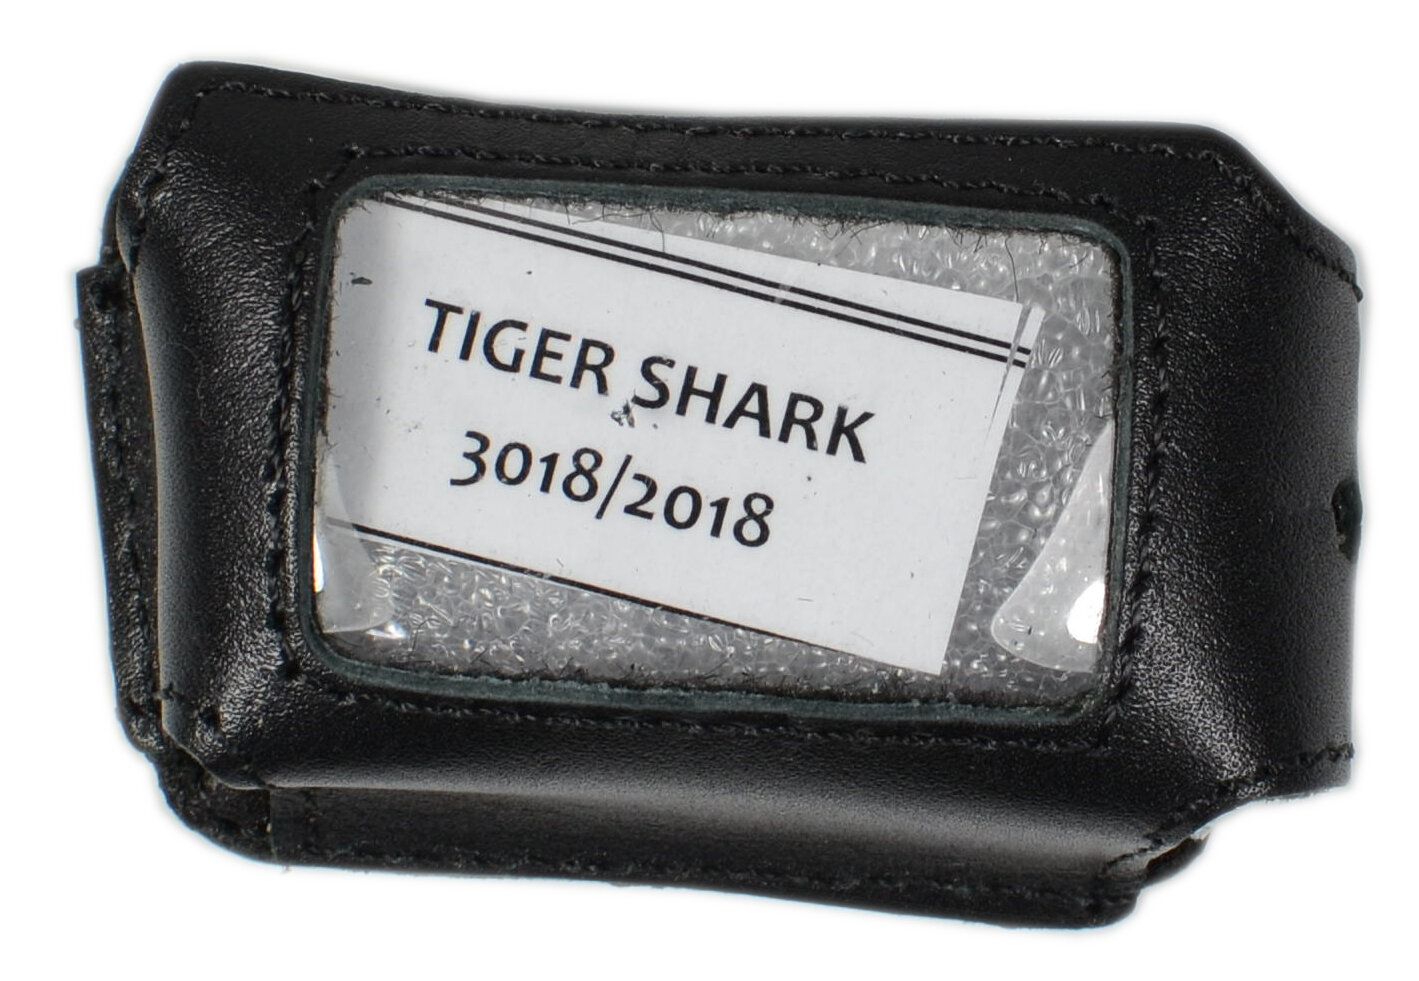 Чехол брелока Tiger Shark TS-3018/2018 ARGO